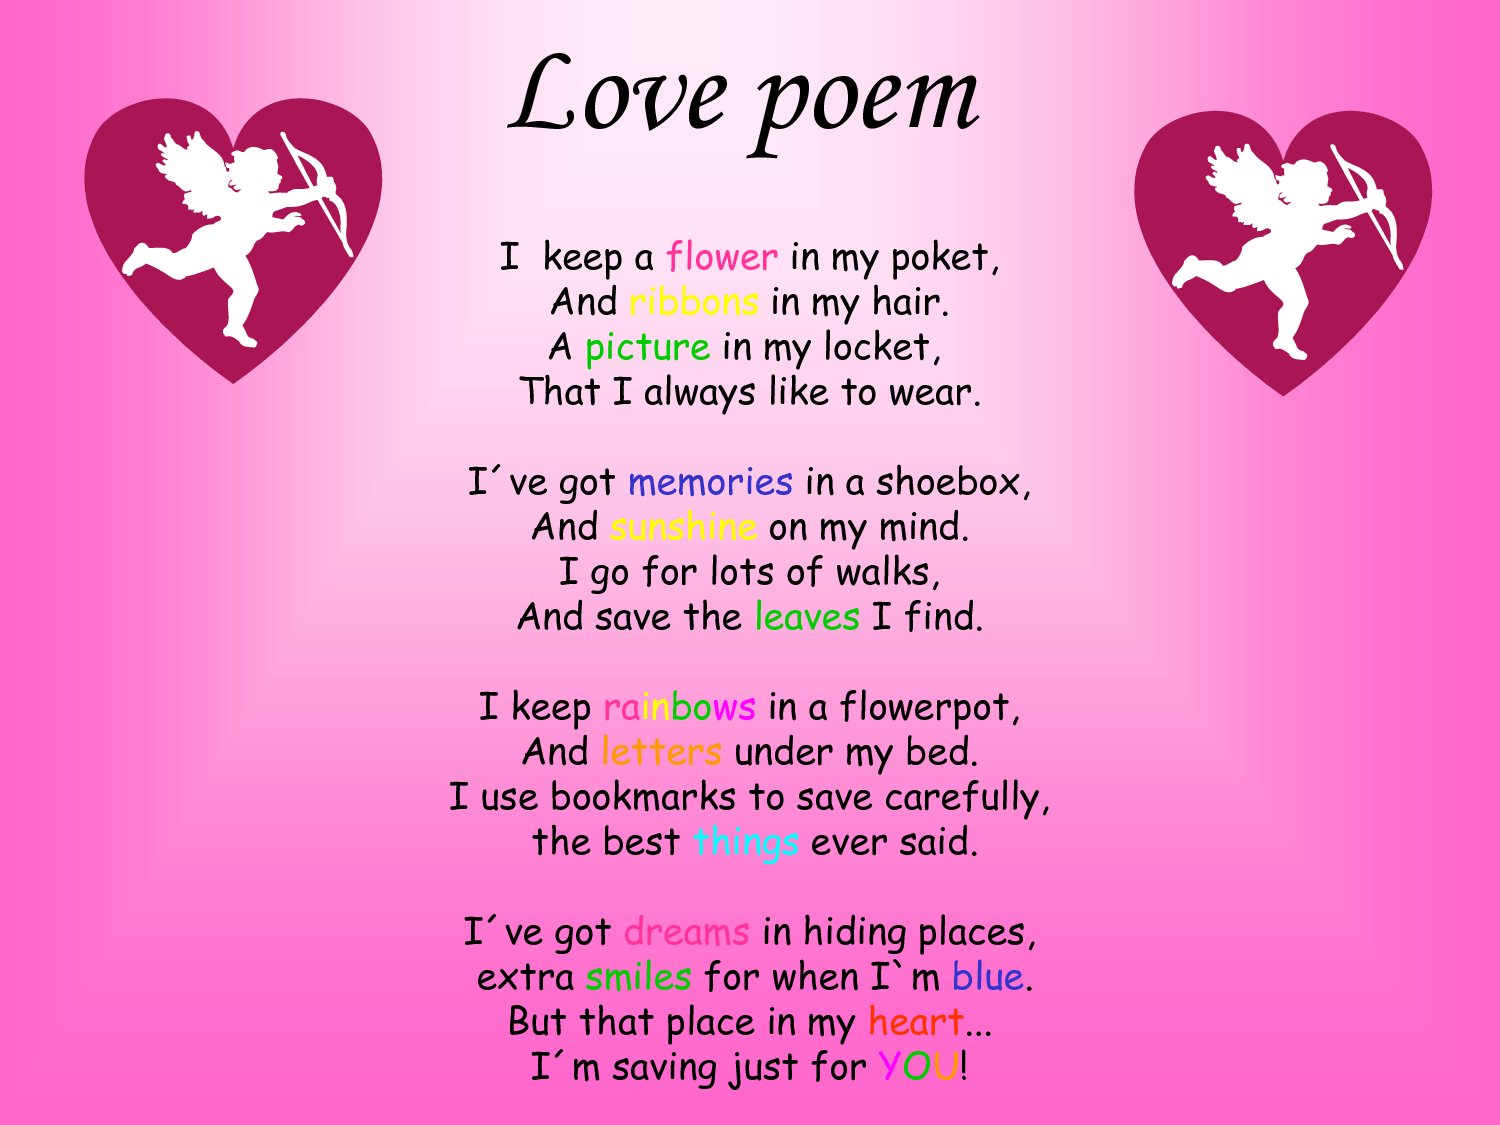 Erotic poetry to spice up your Valentine's Day: Poema para el 14 de febrero